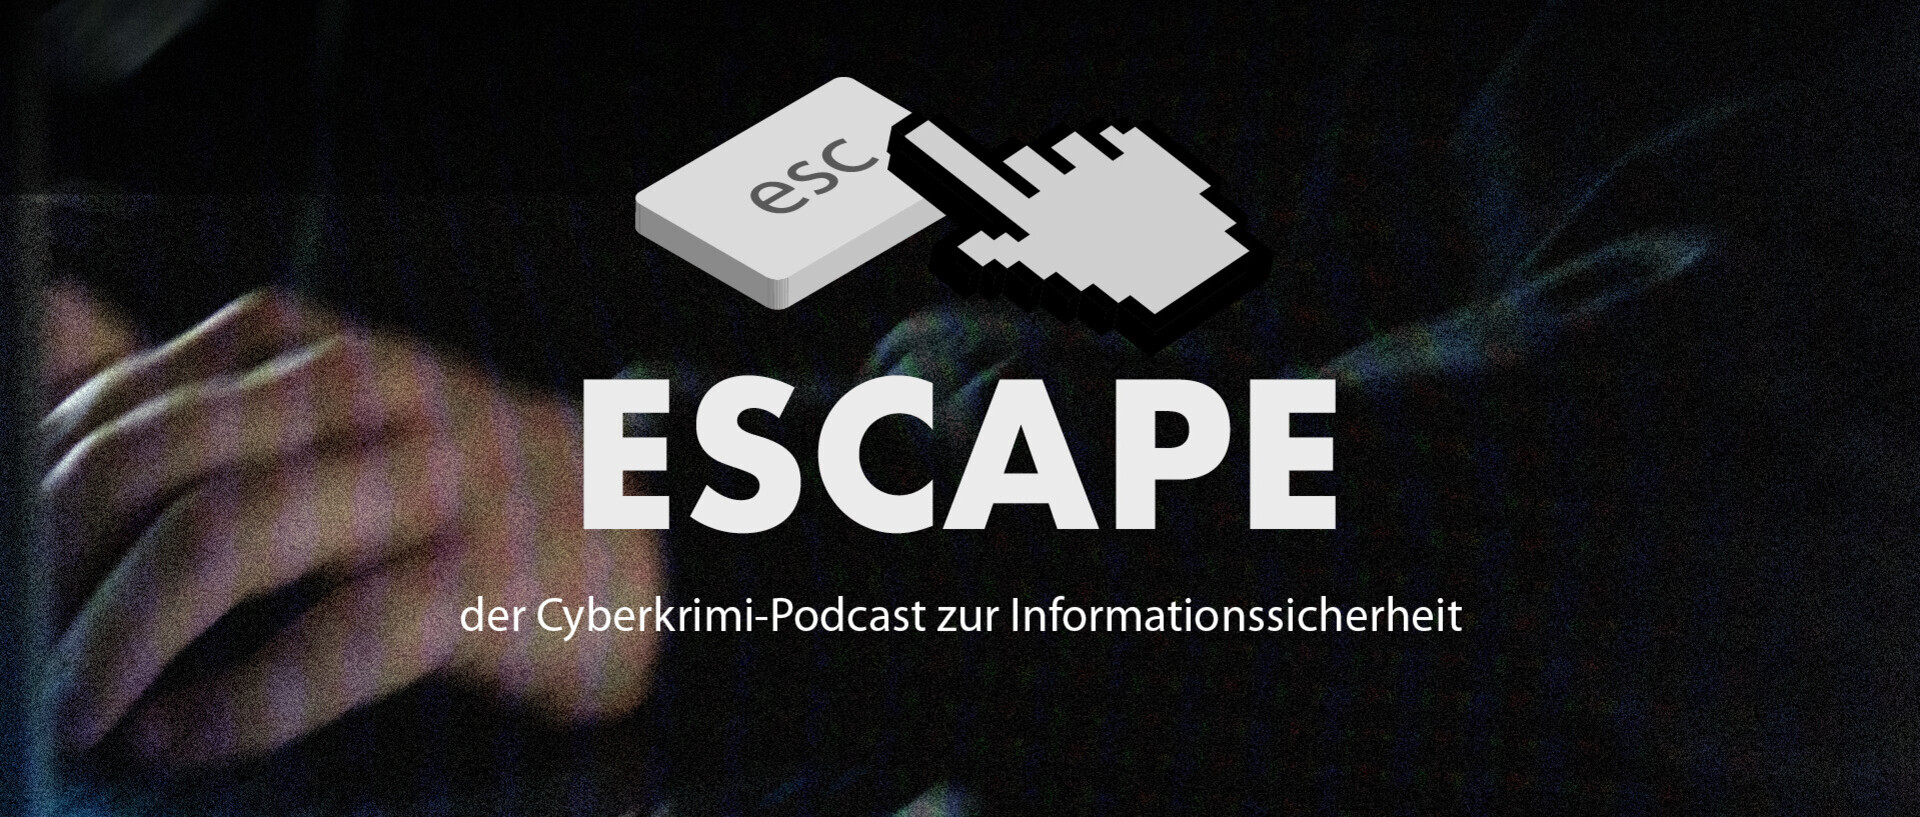 ESCAPE - der Cyberkrimi-Podcast zur Informationssicherheit